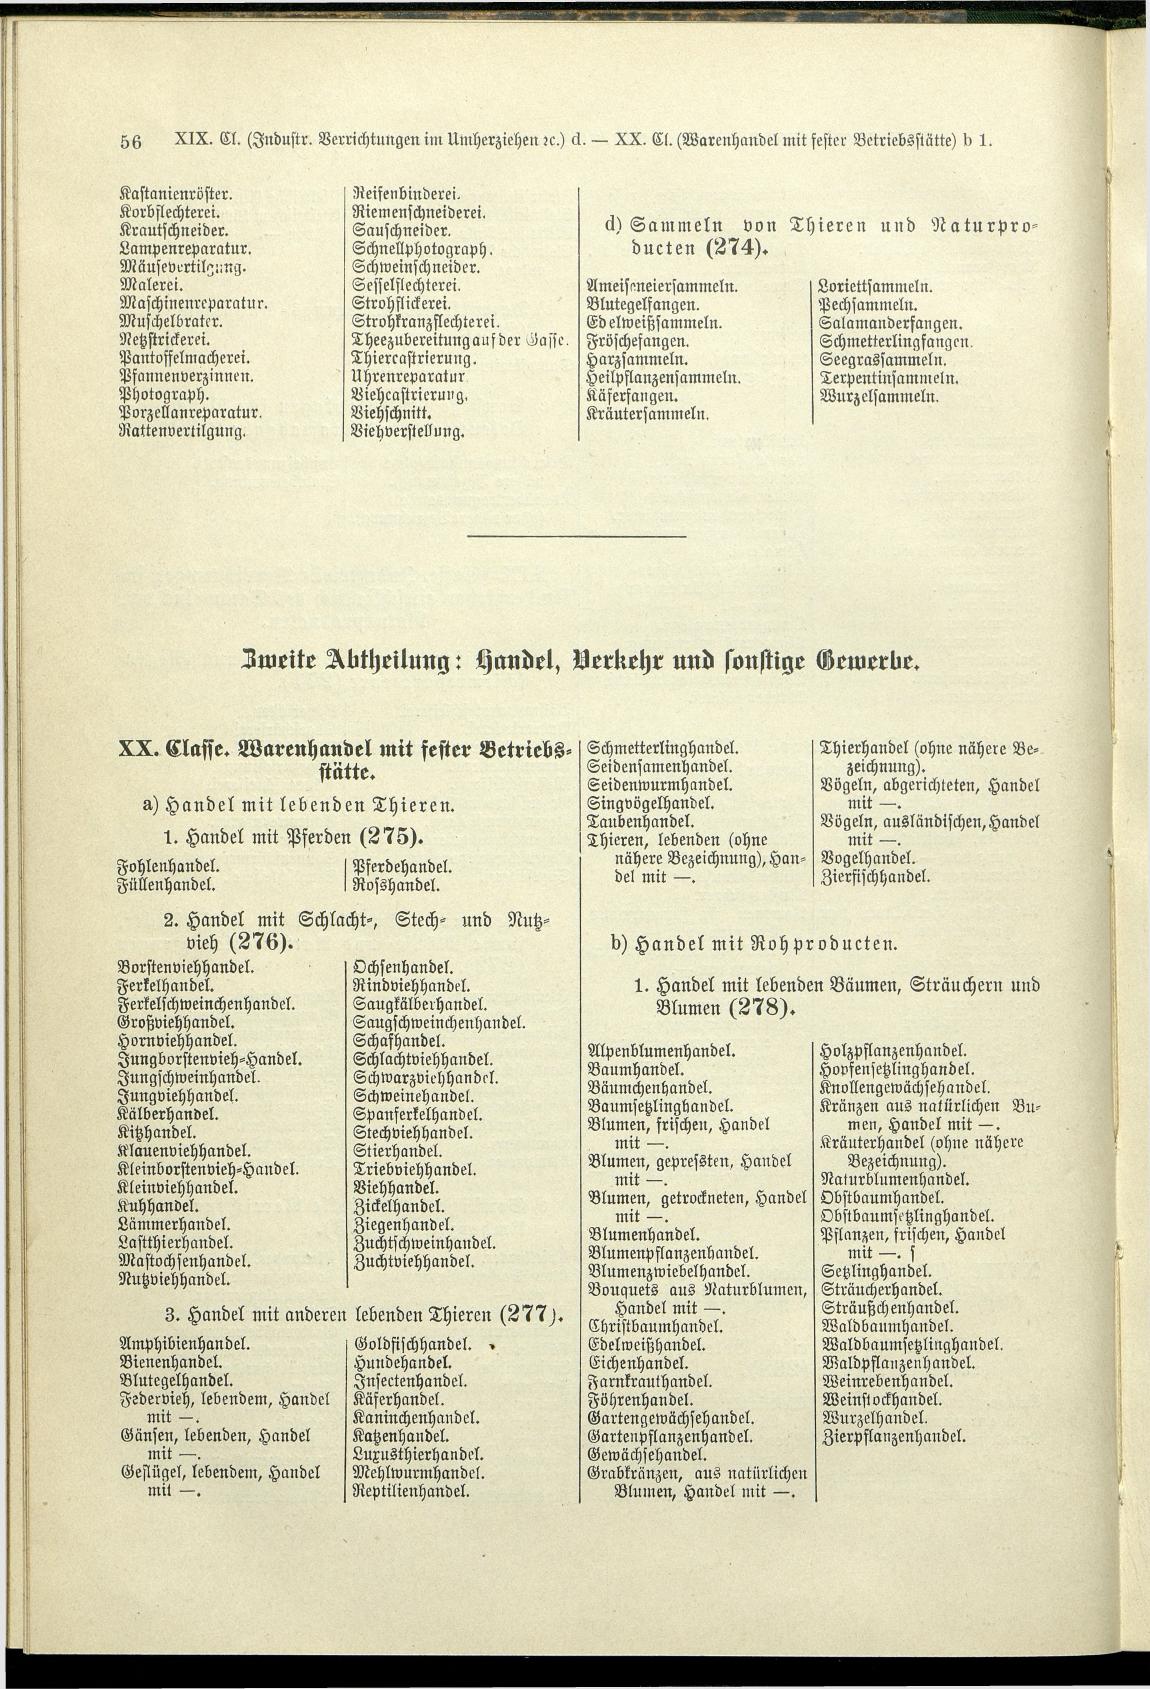 Verzeichnis der Gewerbe der im Reichsrathe vertretenen Königreiche und Länder 1900 - Page 60